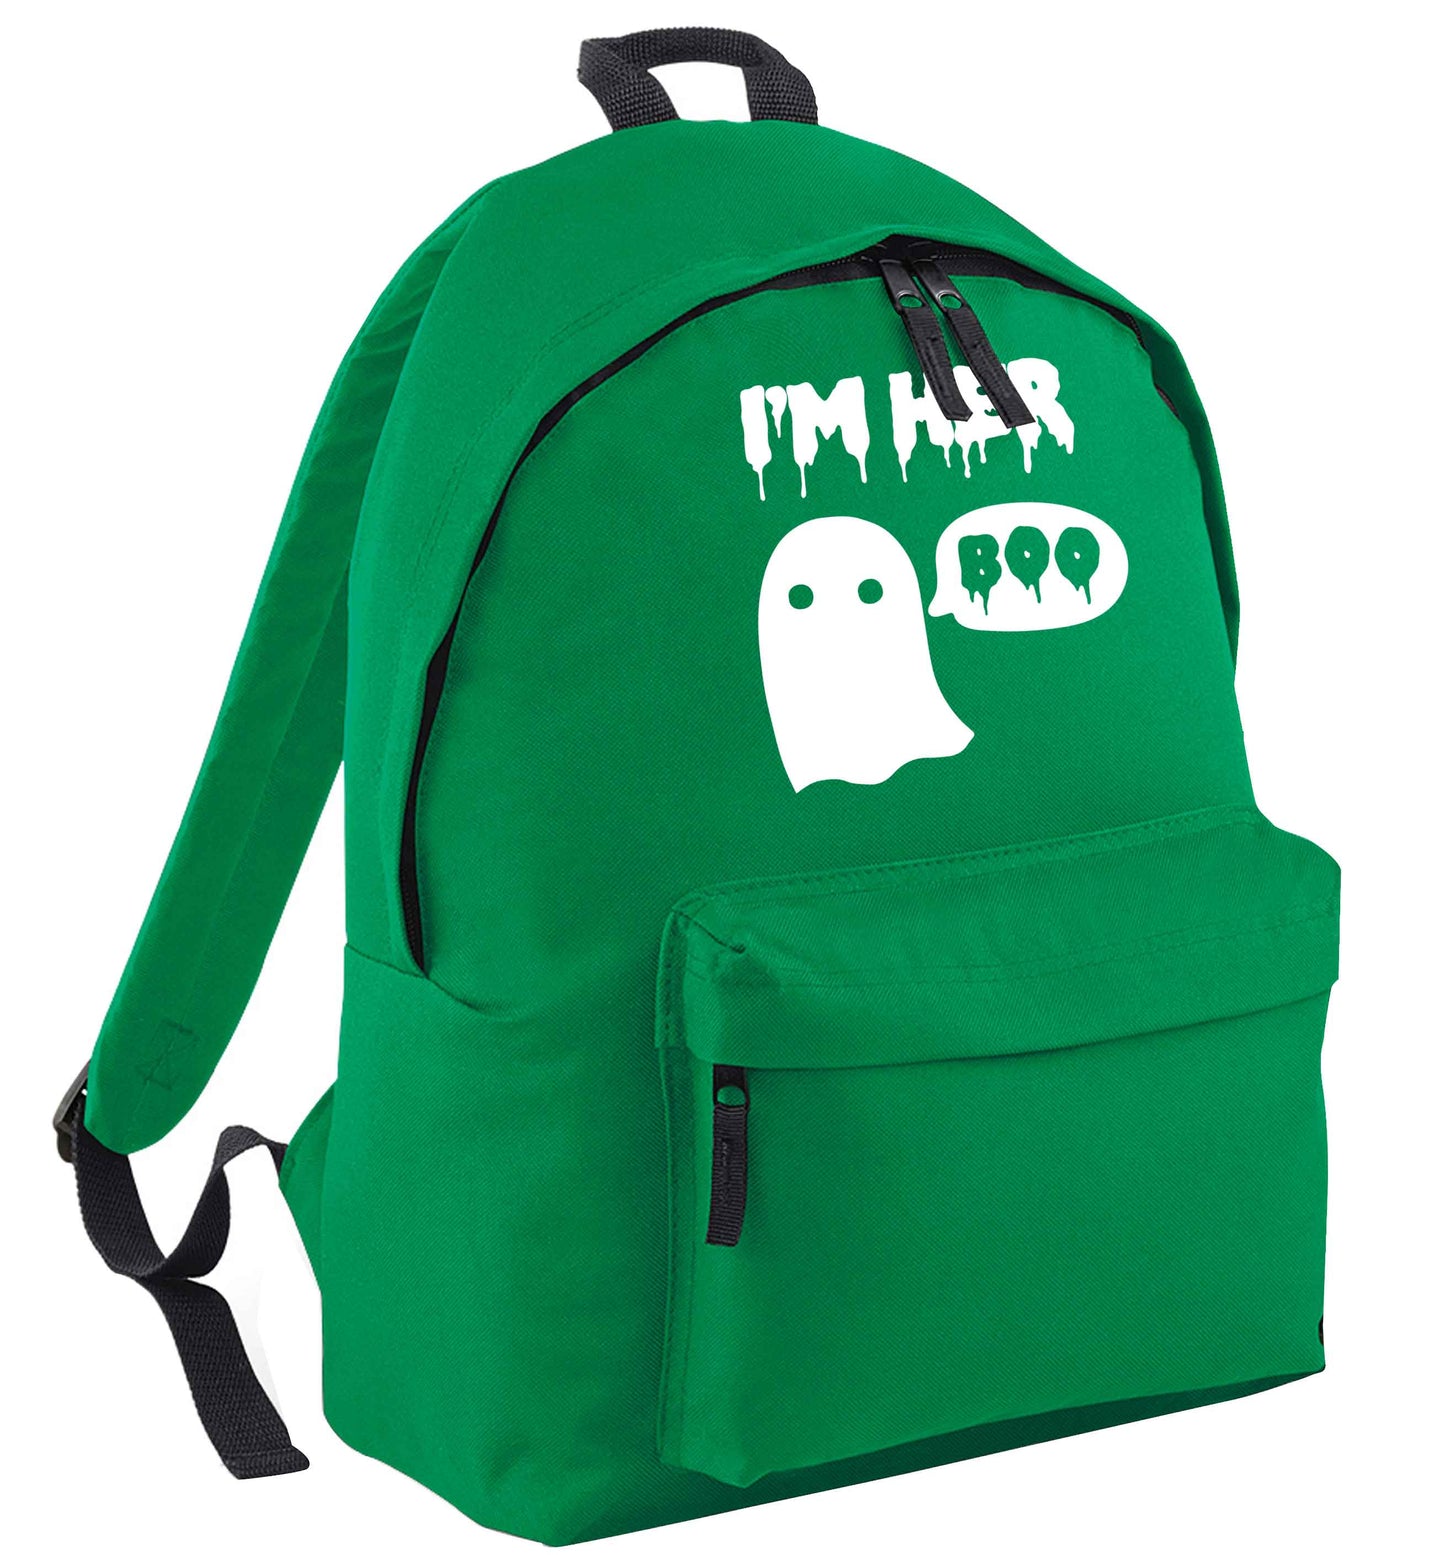 I'm her boo green adults backpack